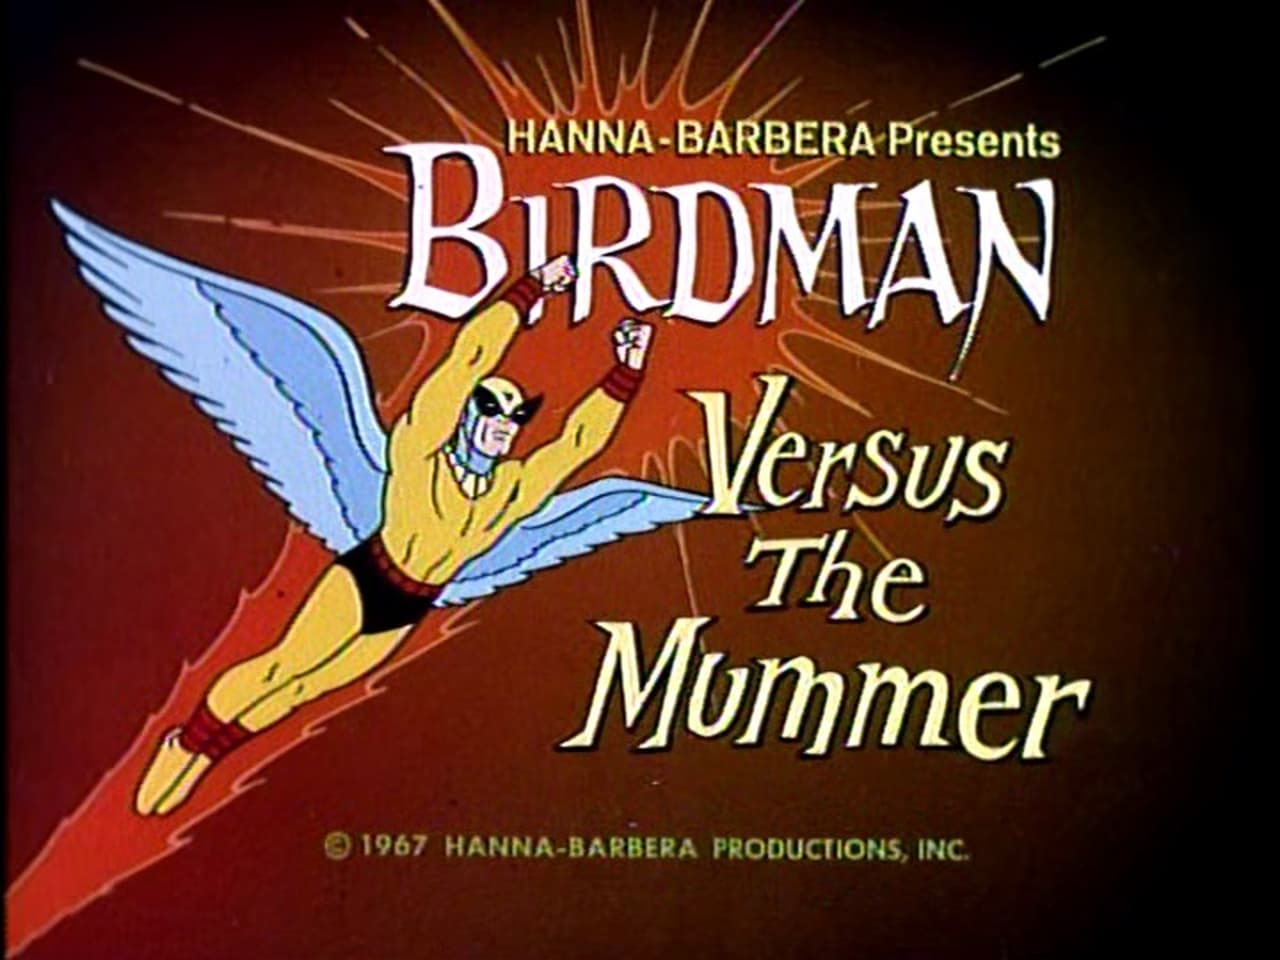 Birdman Versus The Mummer